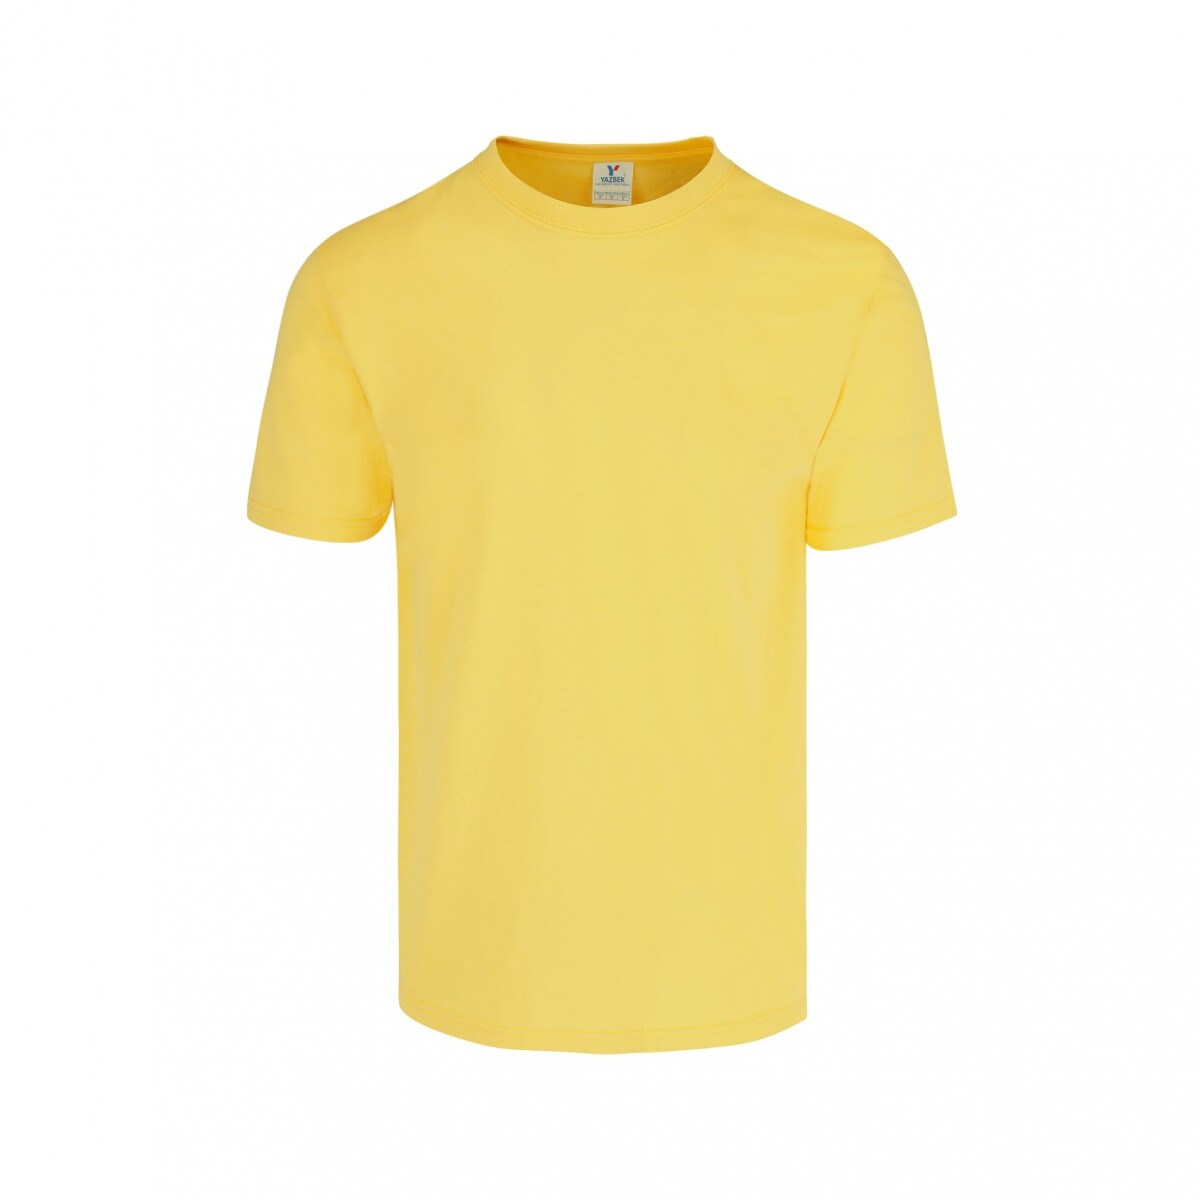 Camiseta a la base peso completo - Amarillo canario 